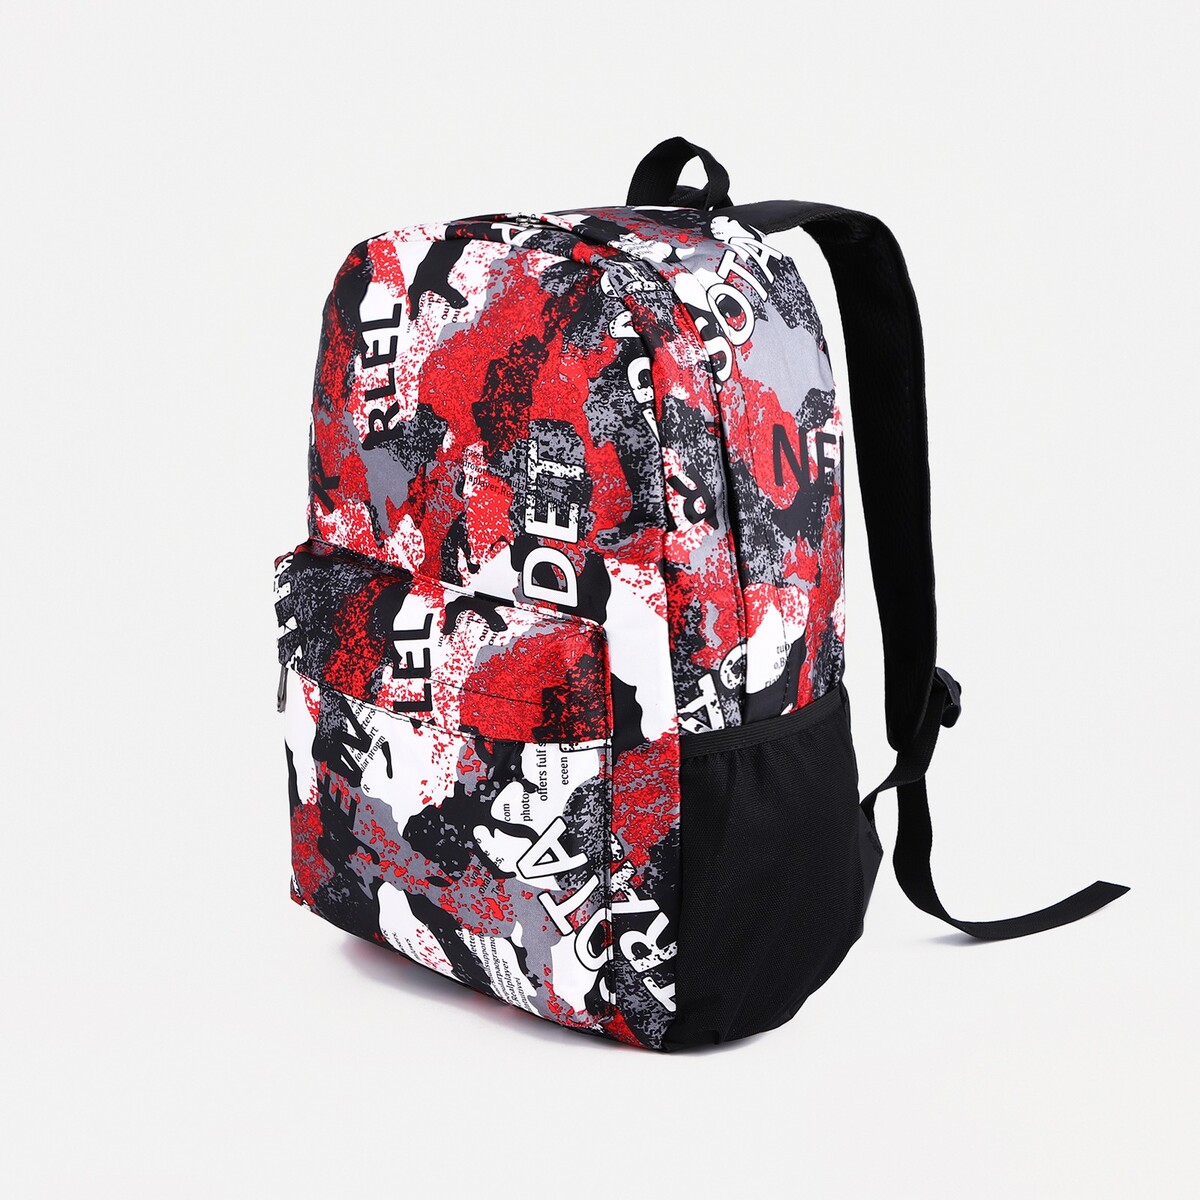 Рюкзак молодежный из текстиля, 3 кармана, цвет серый/красный рюкзак сумка на молнии 10188998 3 кармана отдел для ноутбука серый